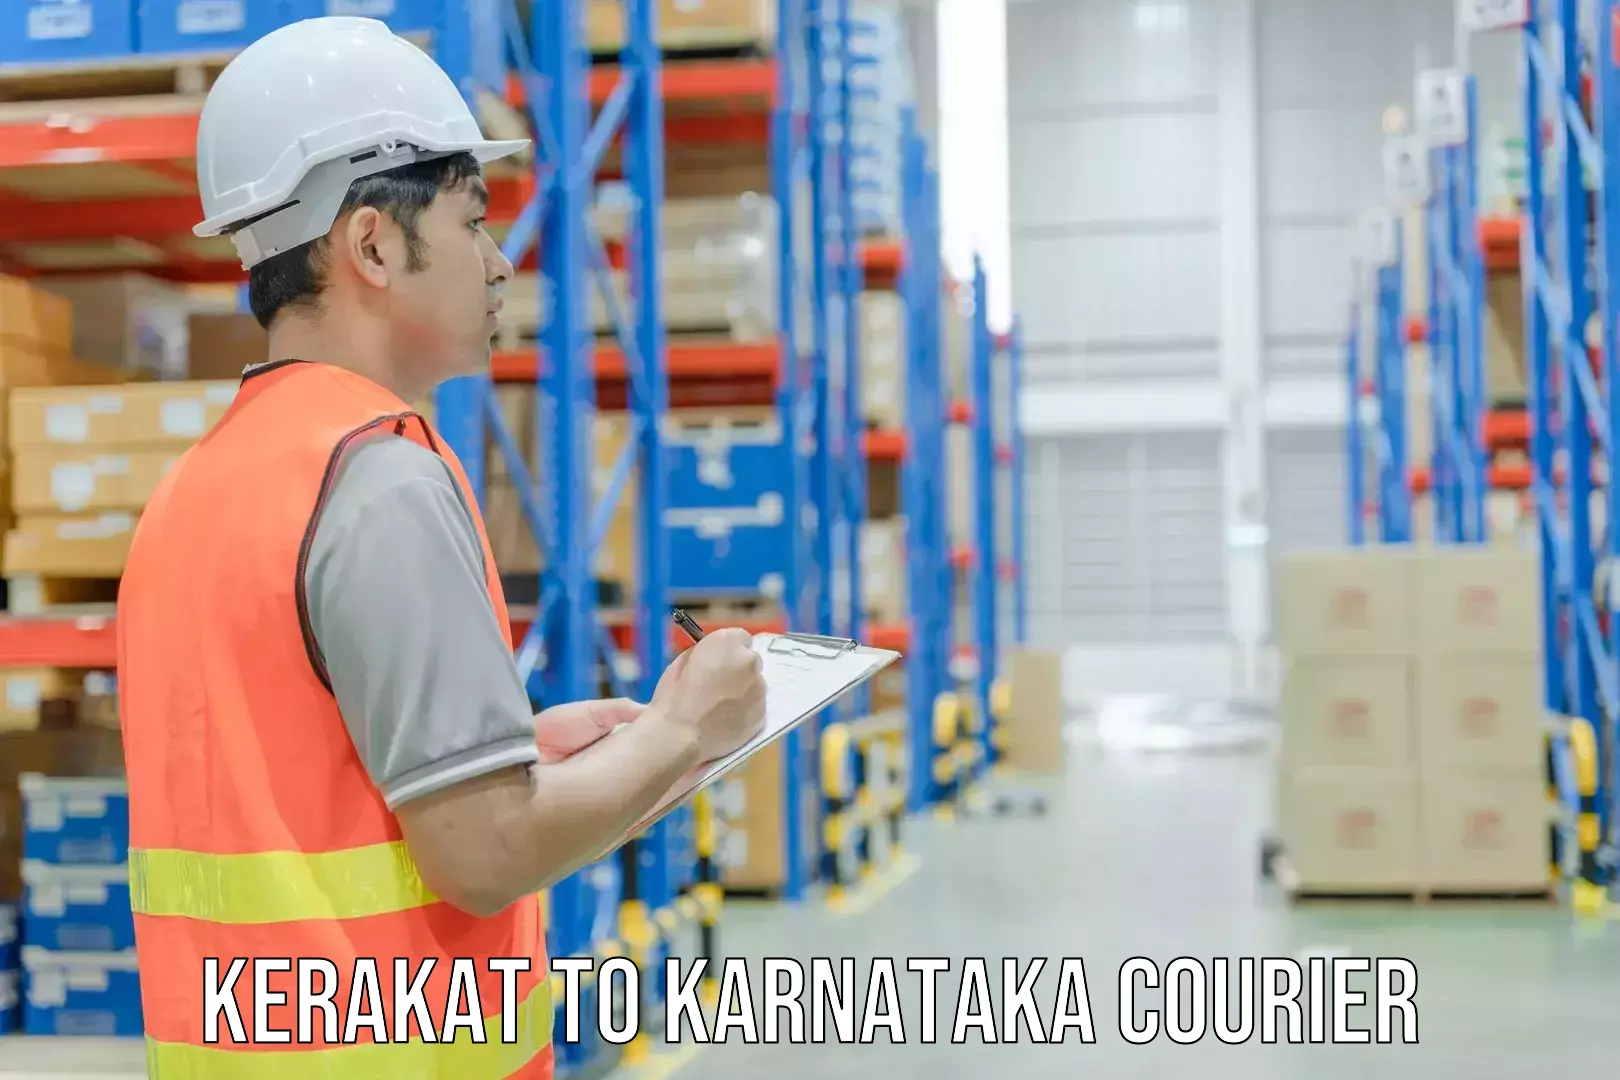 High-priority parcel service Kerakat to Mulbagal